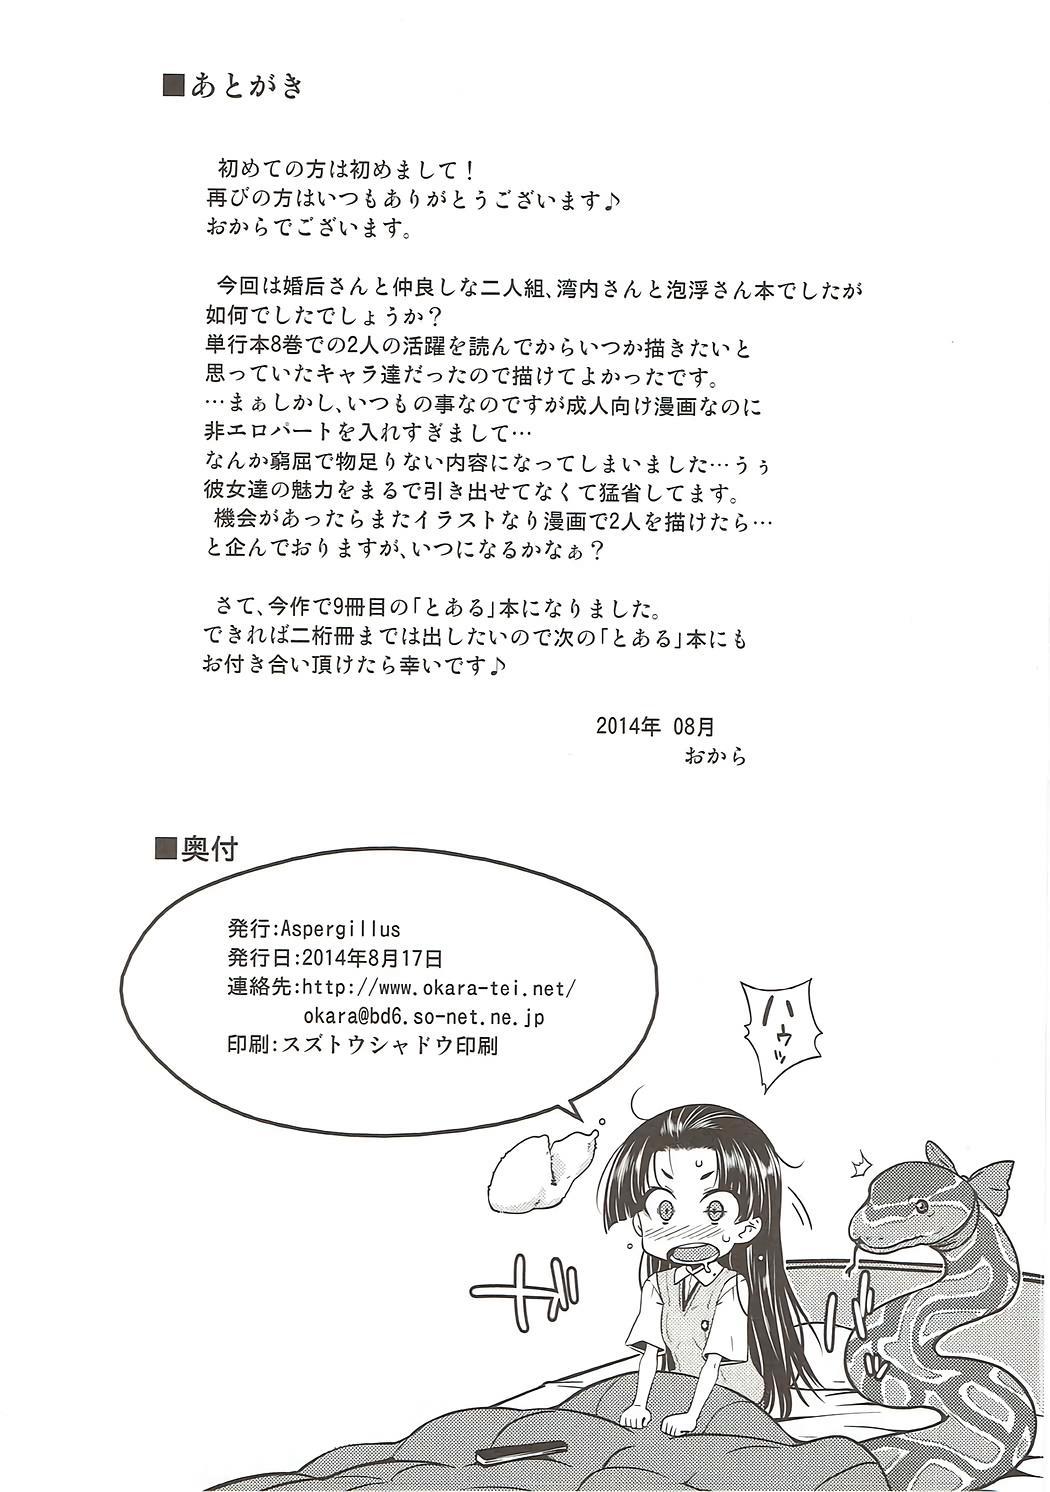 Chibola One Night Hour - Toaru kagaku no railgun Handsome - Page 25